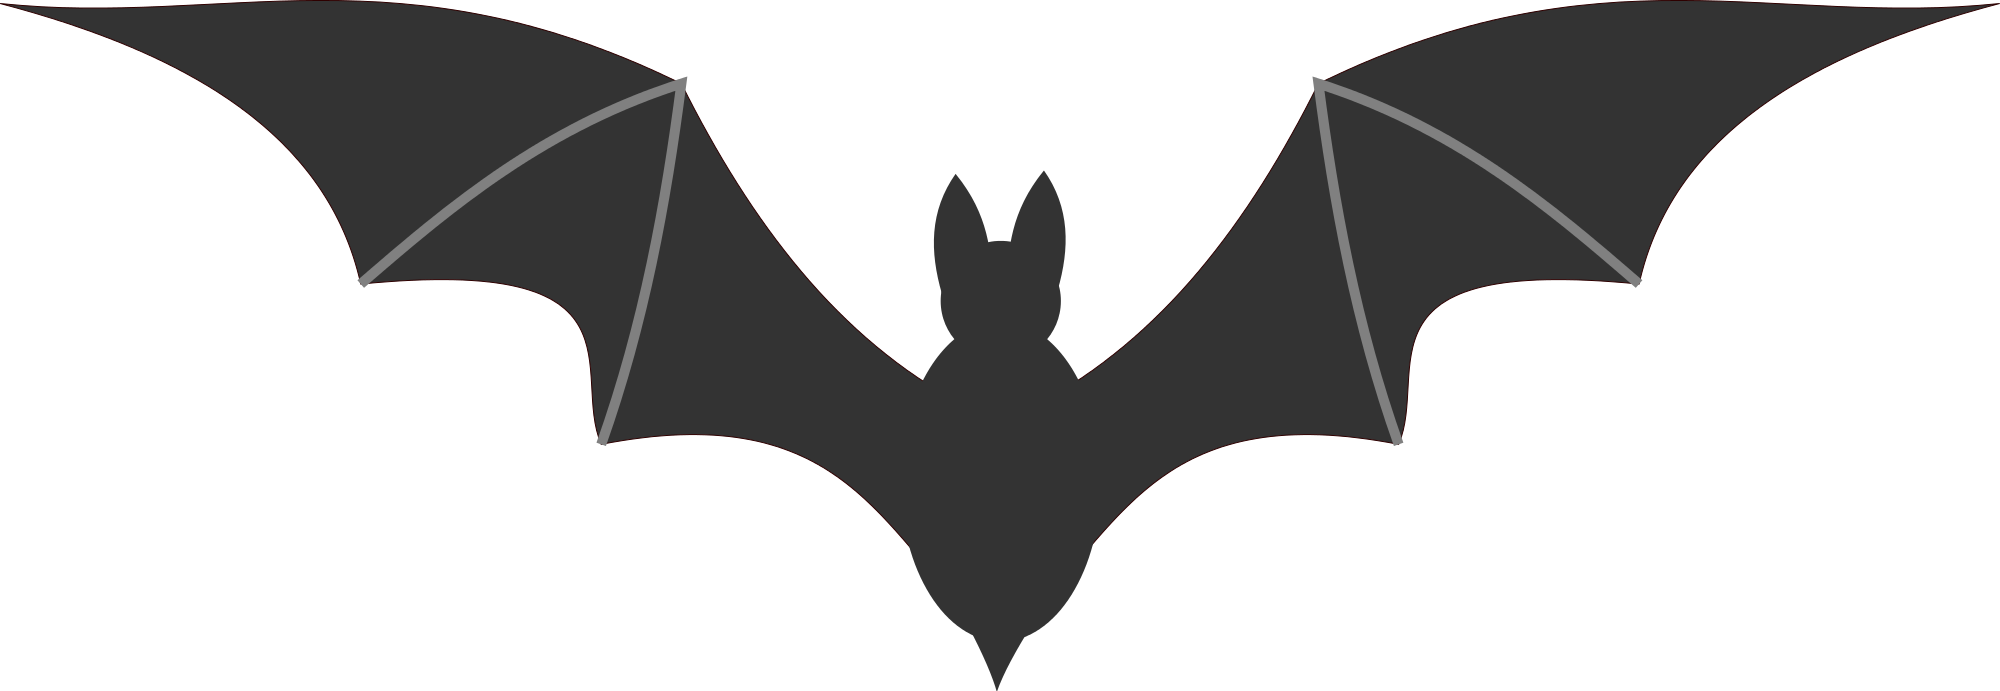 Creepy Clipart Vampire Bat - Bat Clipart Transparent Background (2000x691)